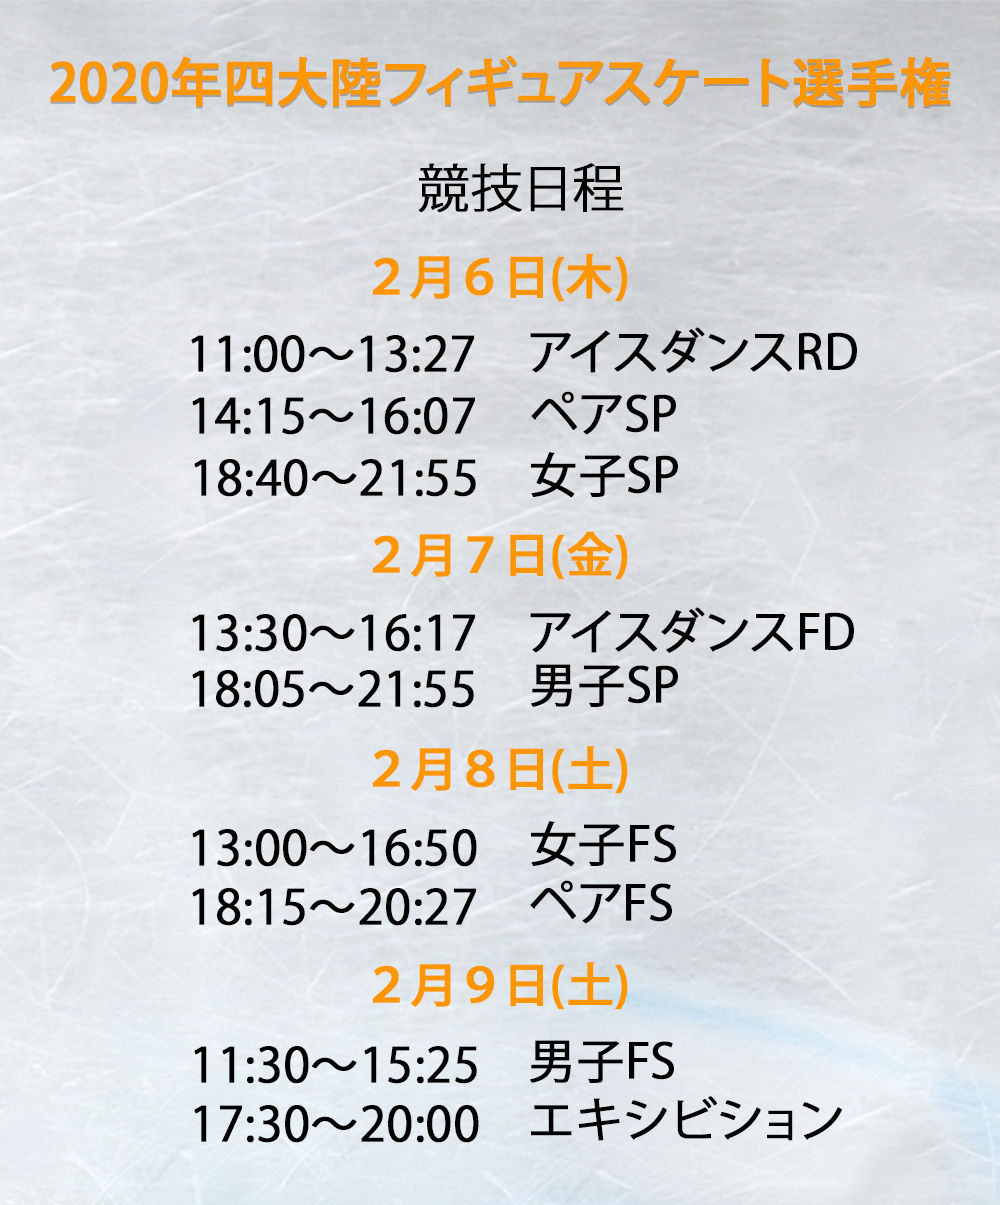 2020年四大陸フィギュアスケート選手権の競技日程 - Sputnik 日本